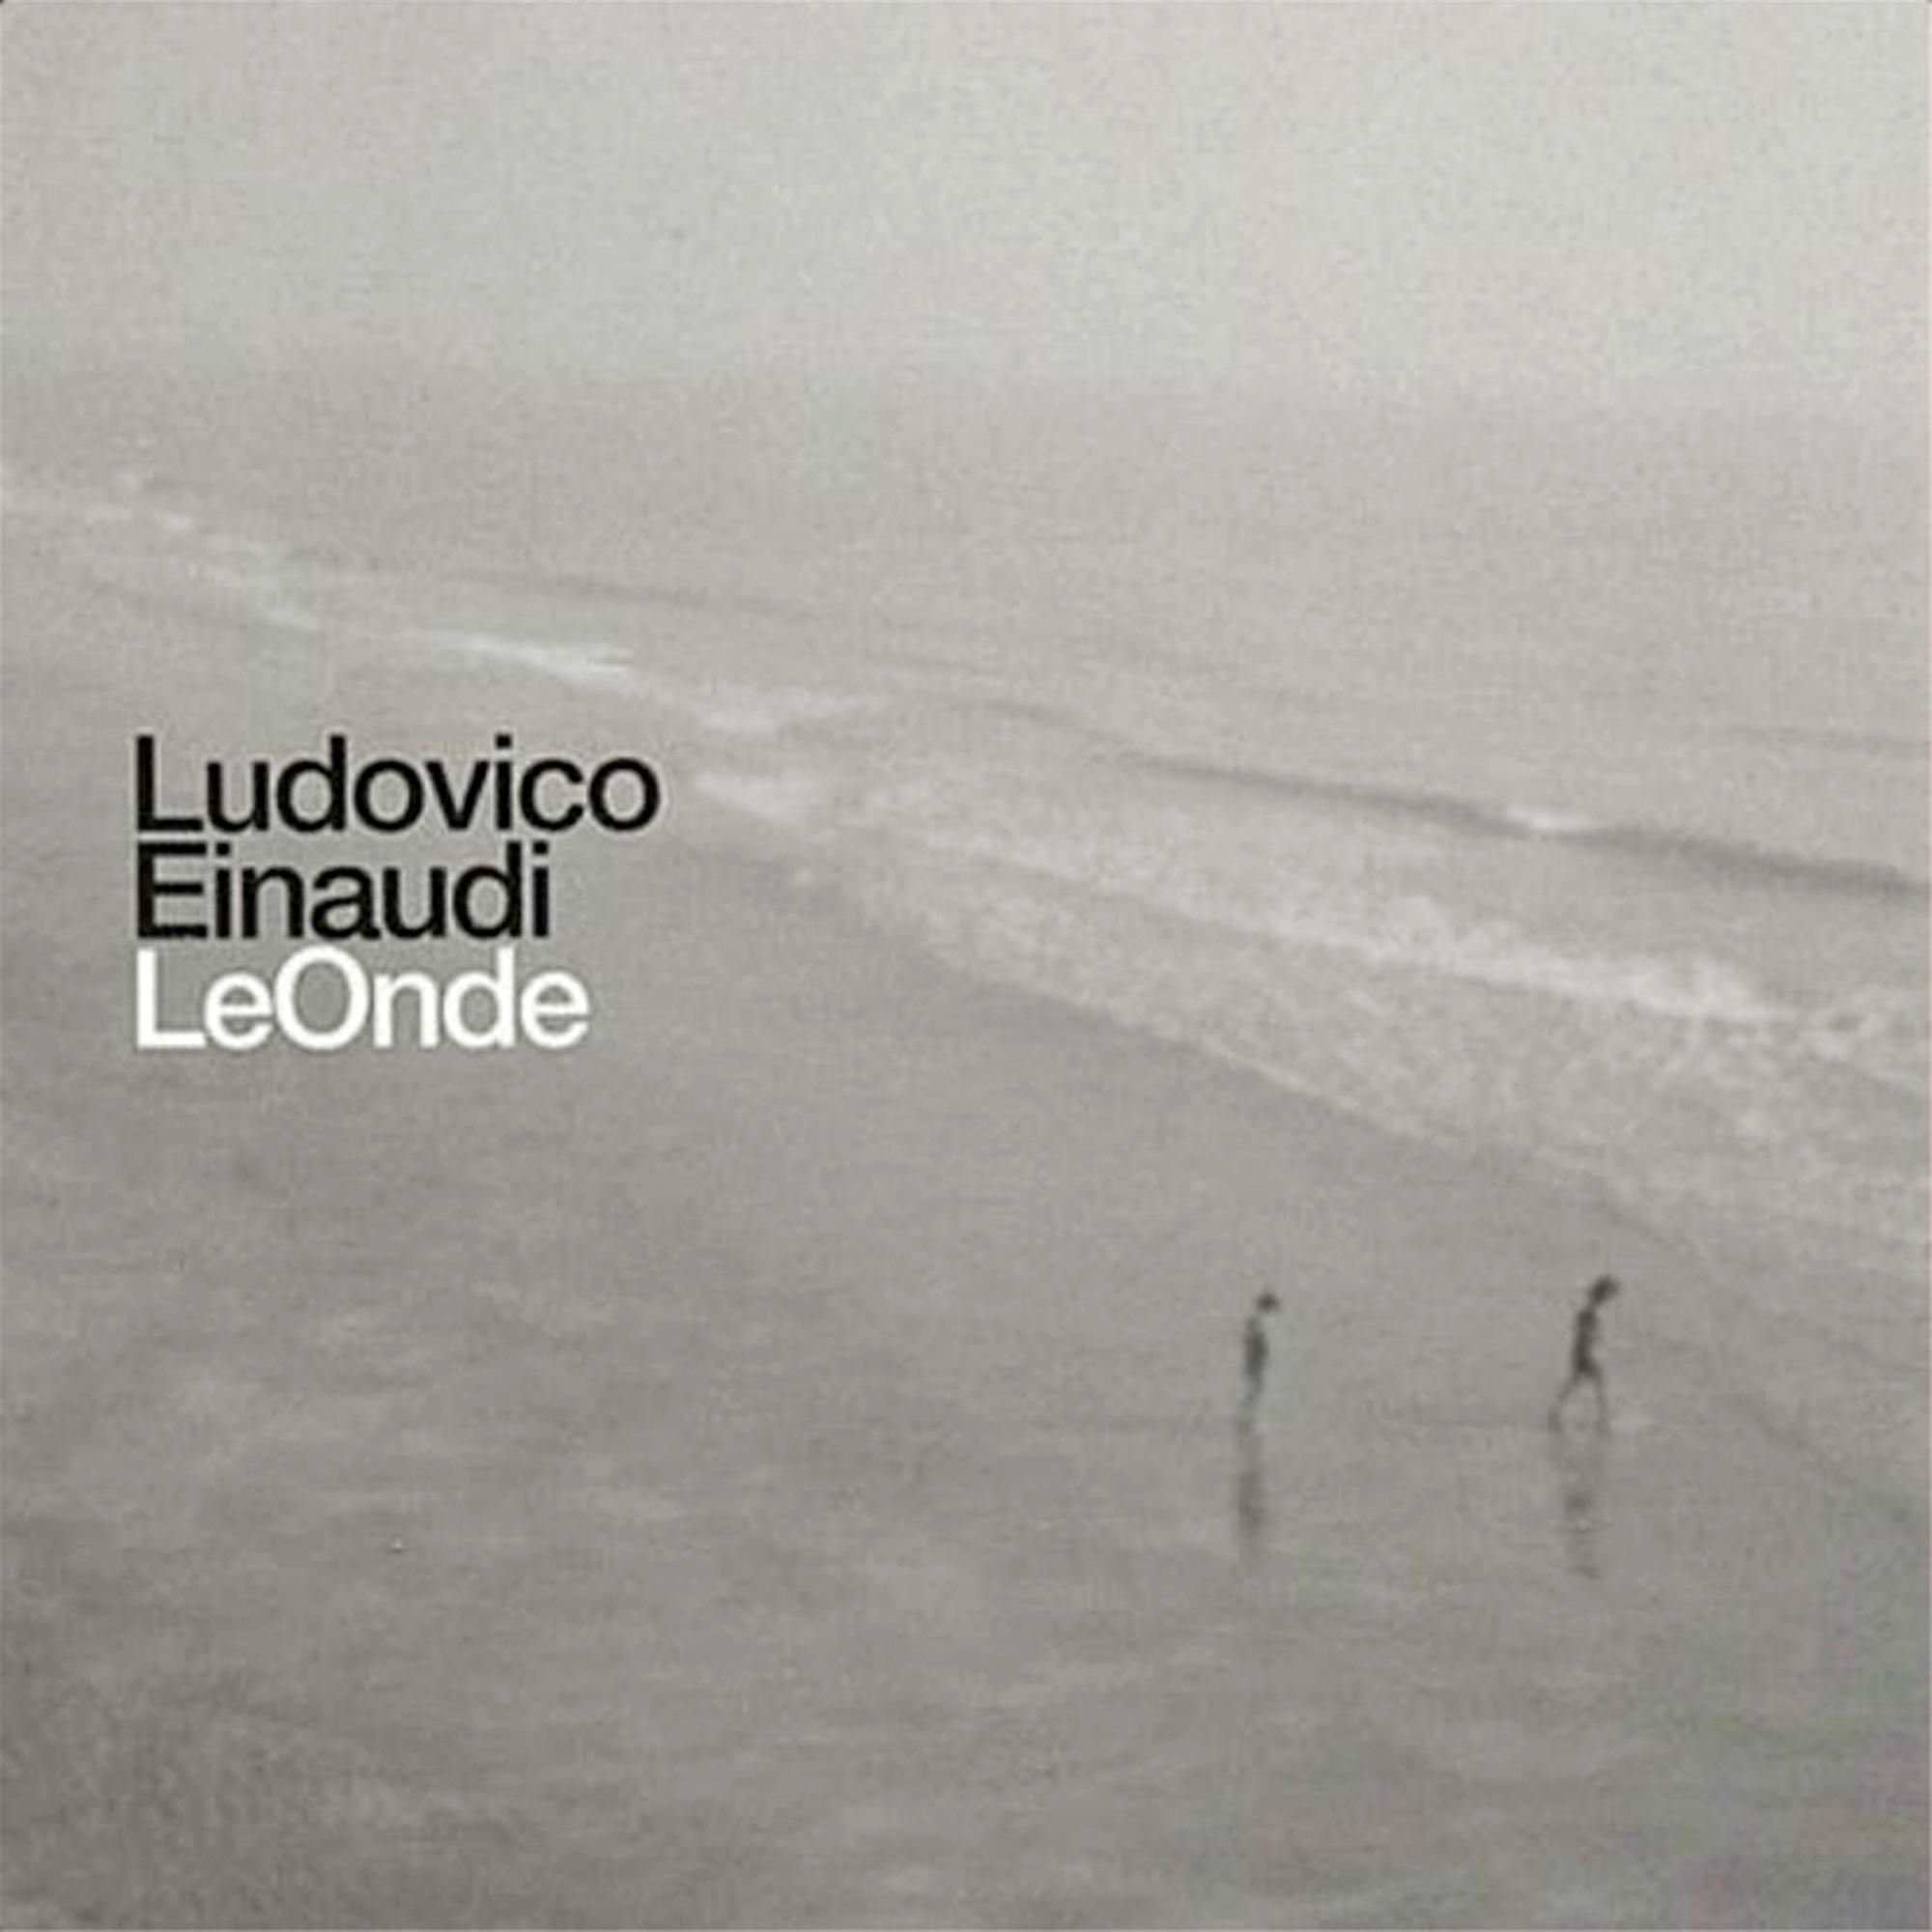 (Vinyl) Onde Ludovico - Le - Einaudi